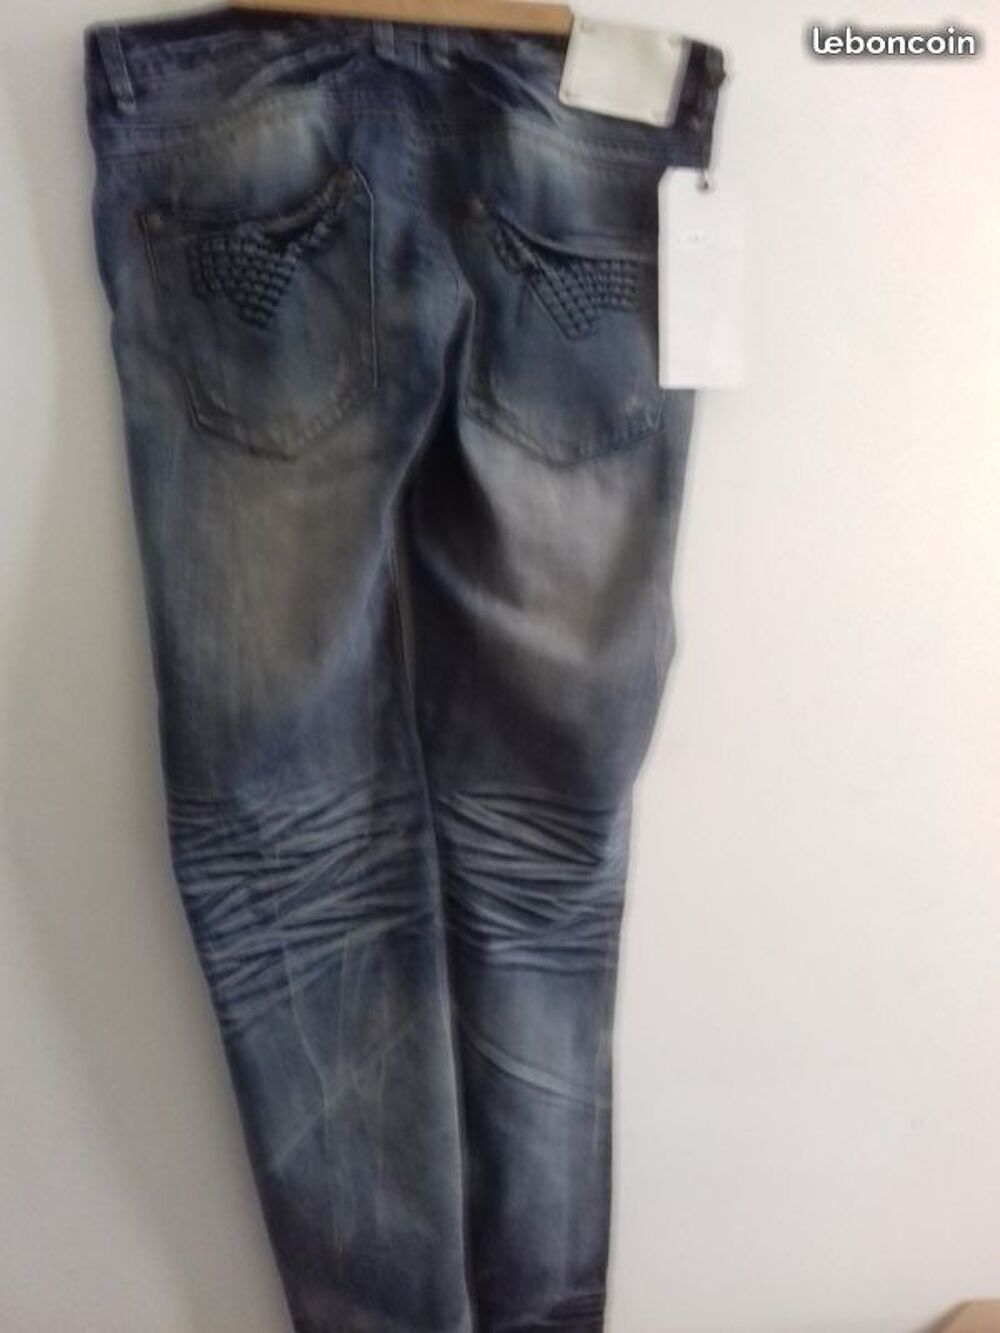 Superbe Jeans Neuf Homme Leo Gutti T 48 w38 tr&eacute;s Styl&eacute; Vtements